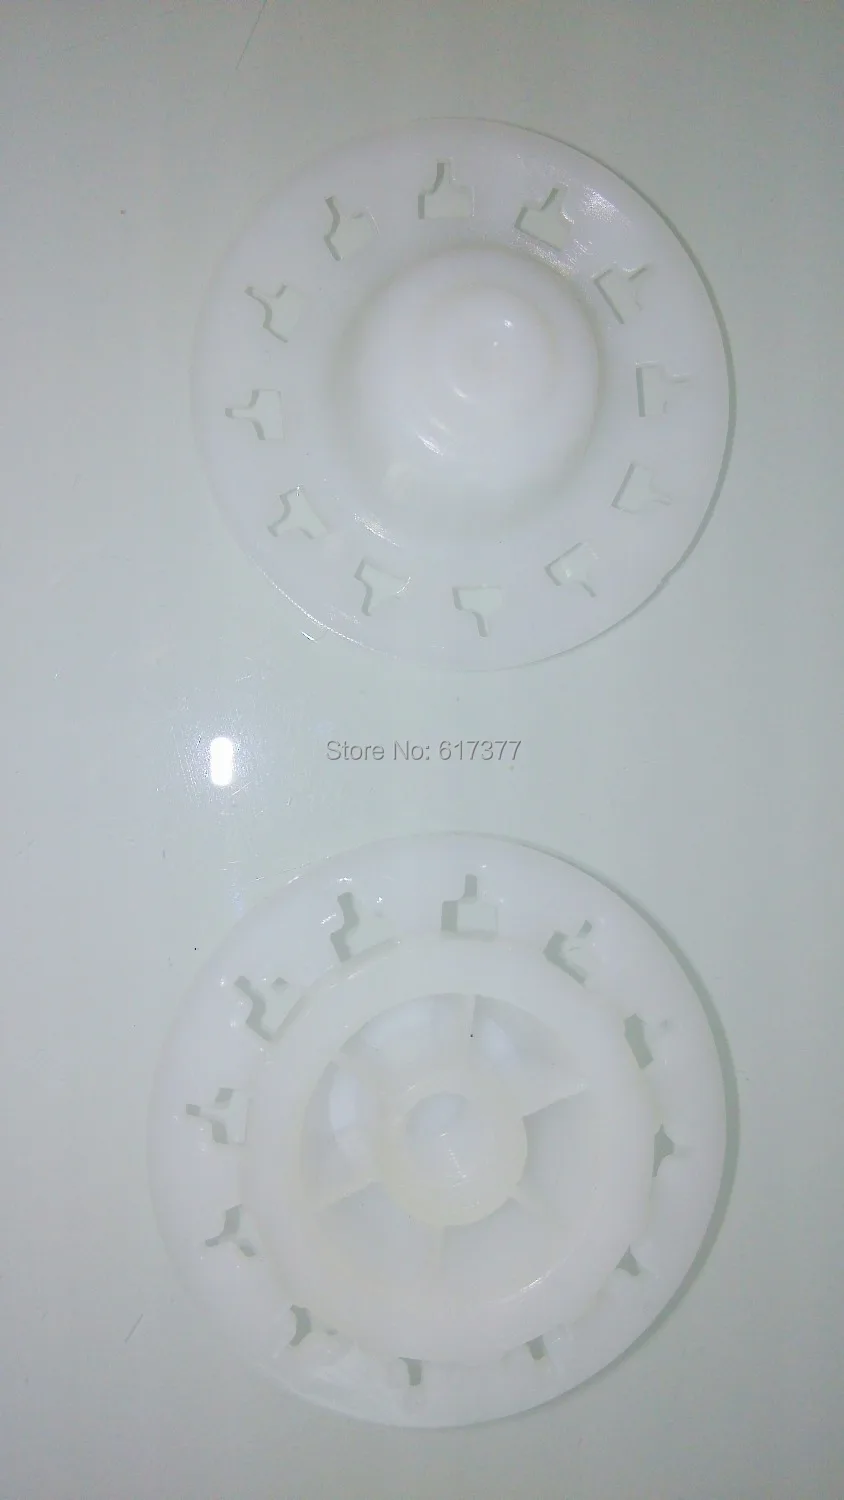 Полиуретановый герметик, долговечный нажимной диск для использования с хорошим качеством, герметик для колбасок, нажимная пластина, мягкий... от AliExpress RU&CIS NEW